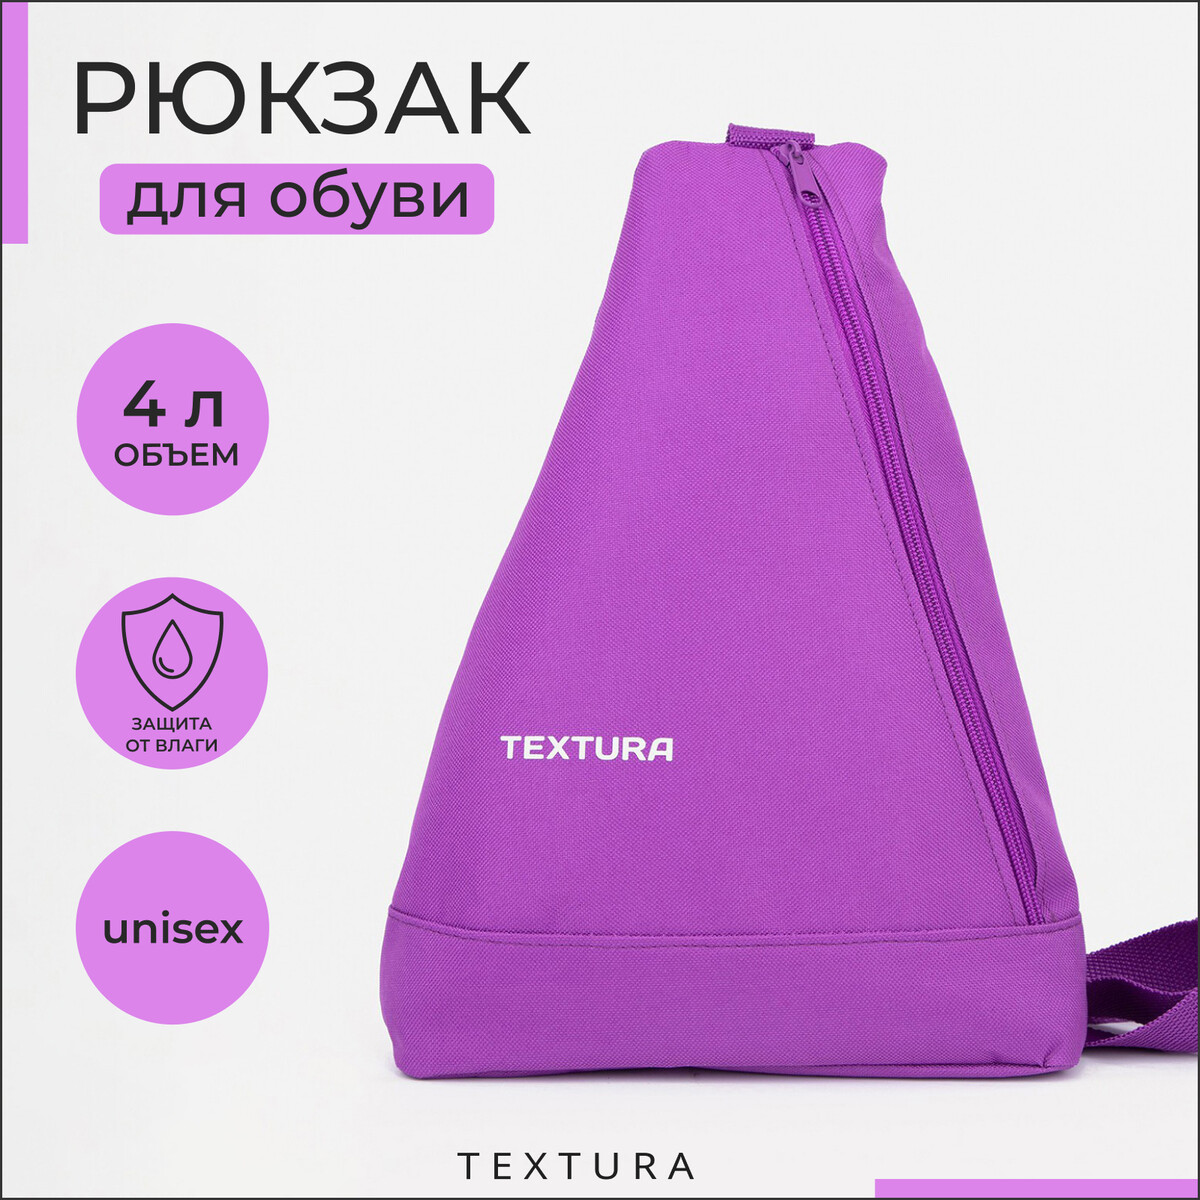 Рюкзак для обуви на молнии, до 35 размера,textura, цвет сиреневый рюкзак для обуви на молнии до 35 размера фиолетовый